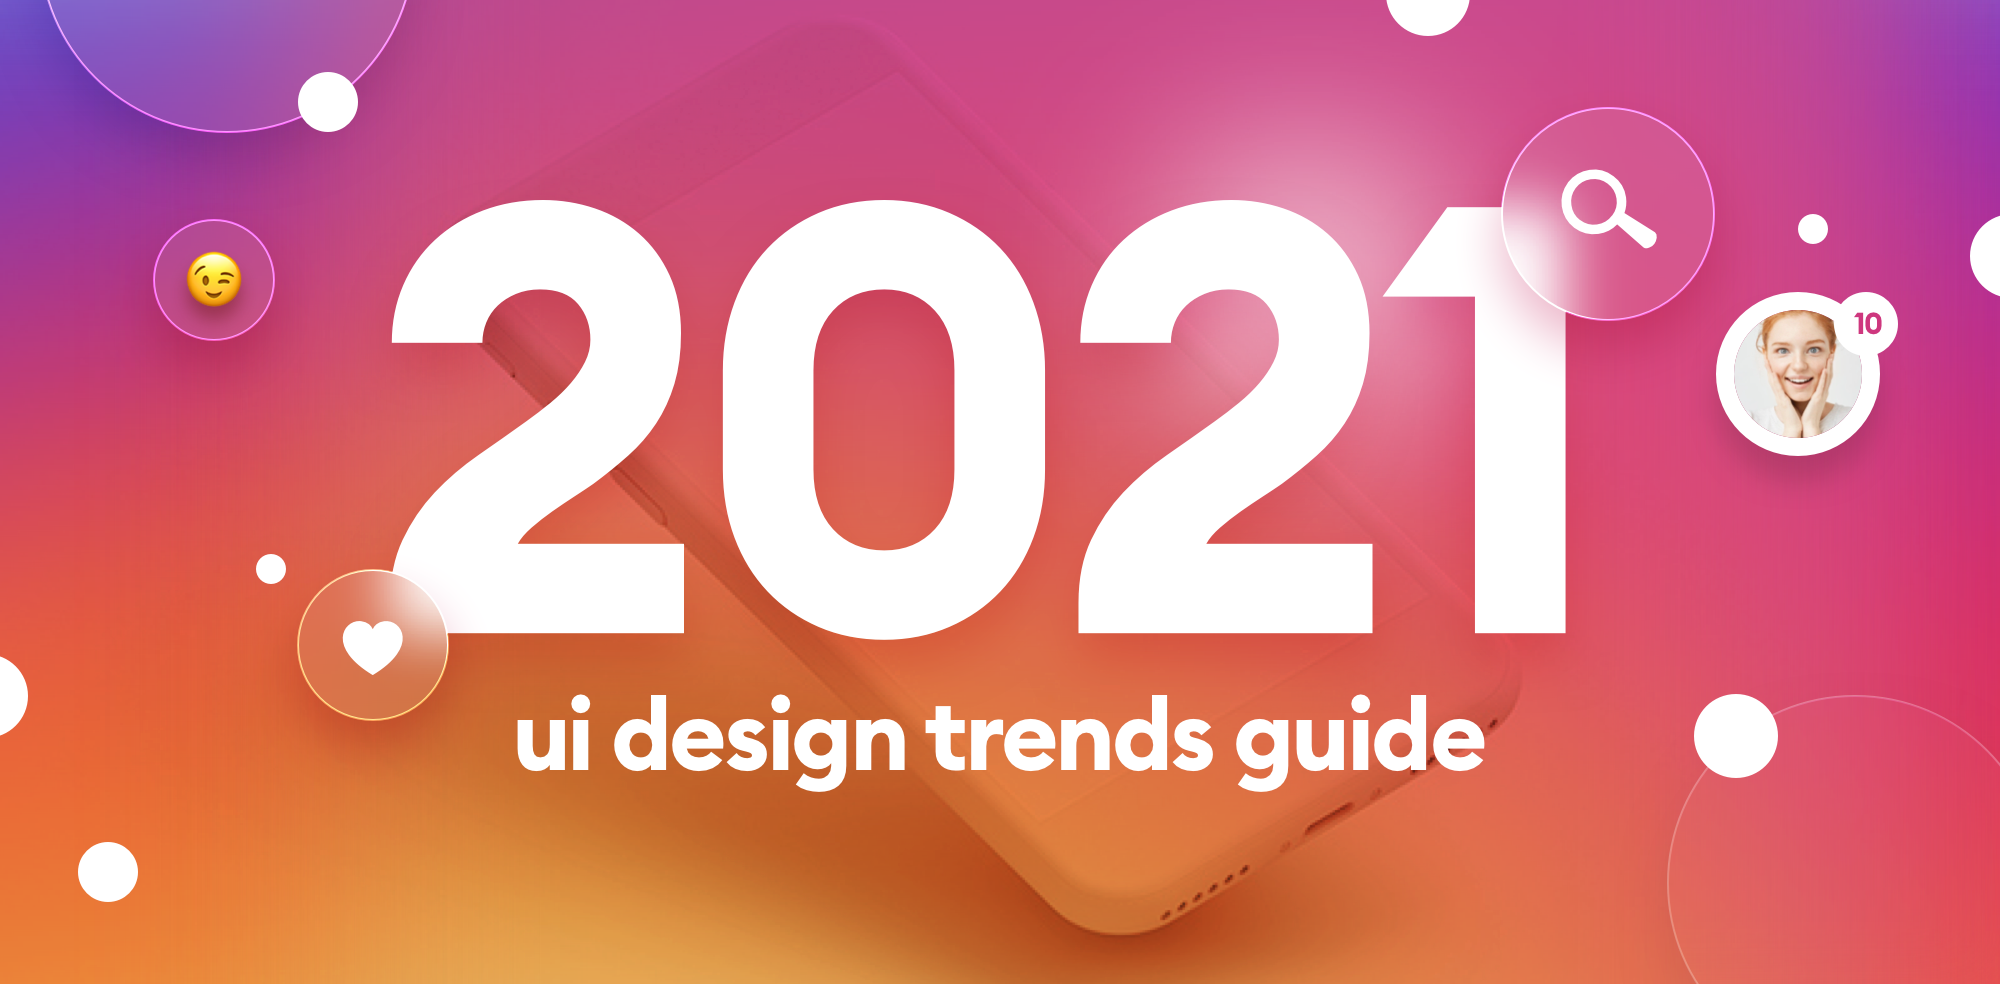 Top 5 Hottest Mobile App Design Trends For 2021